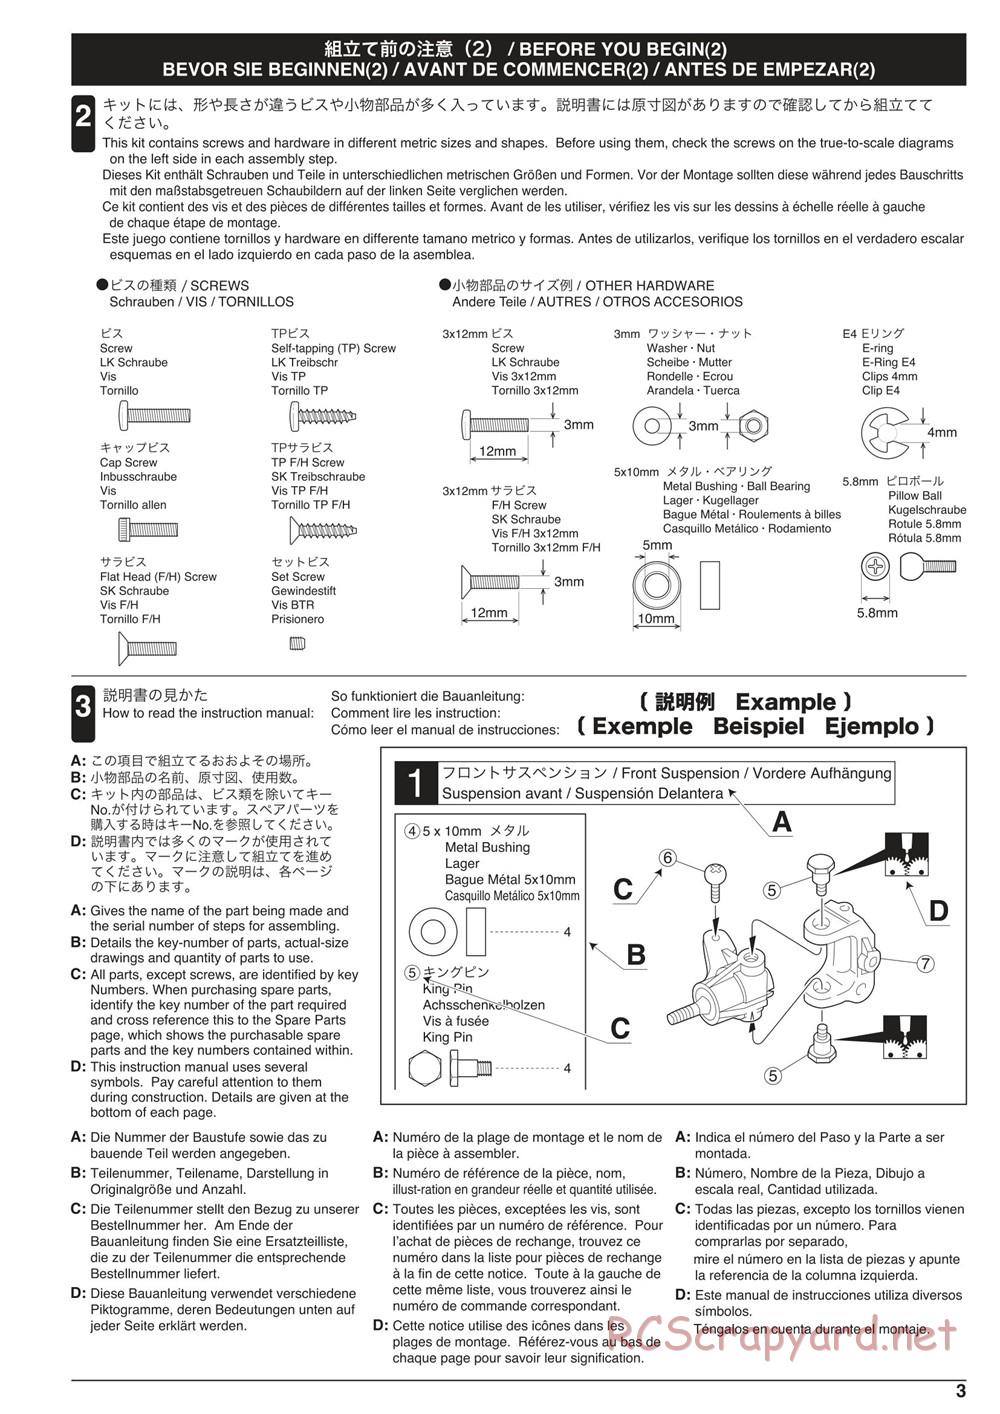 Kyosho - Scorpion XXL VE - Manual - Page 3